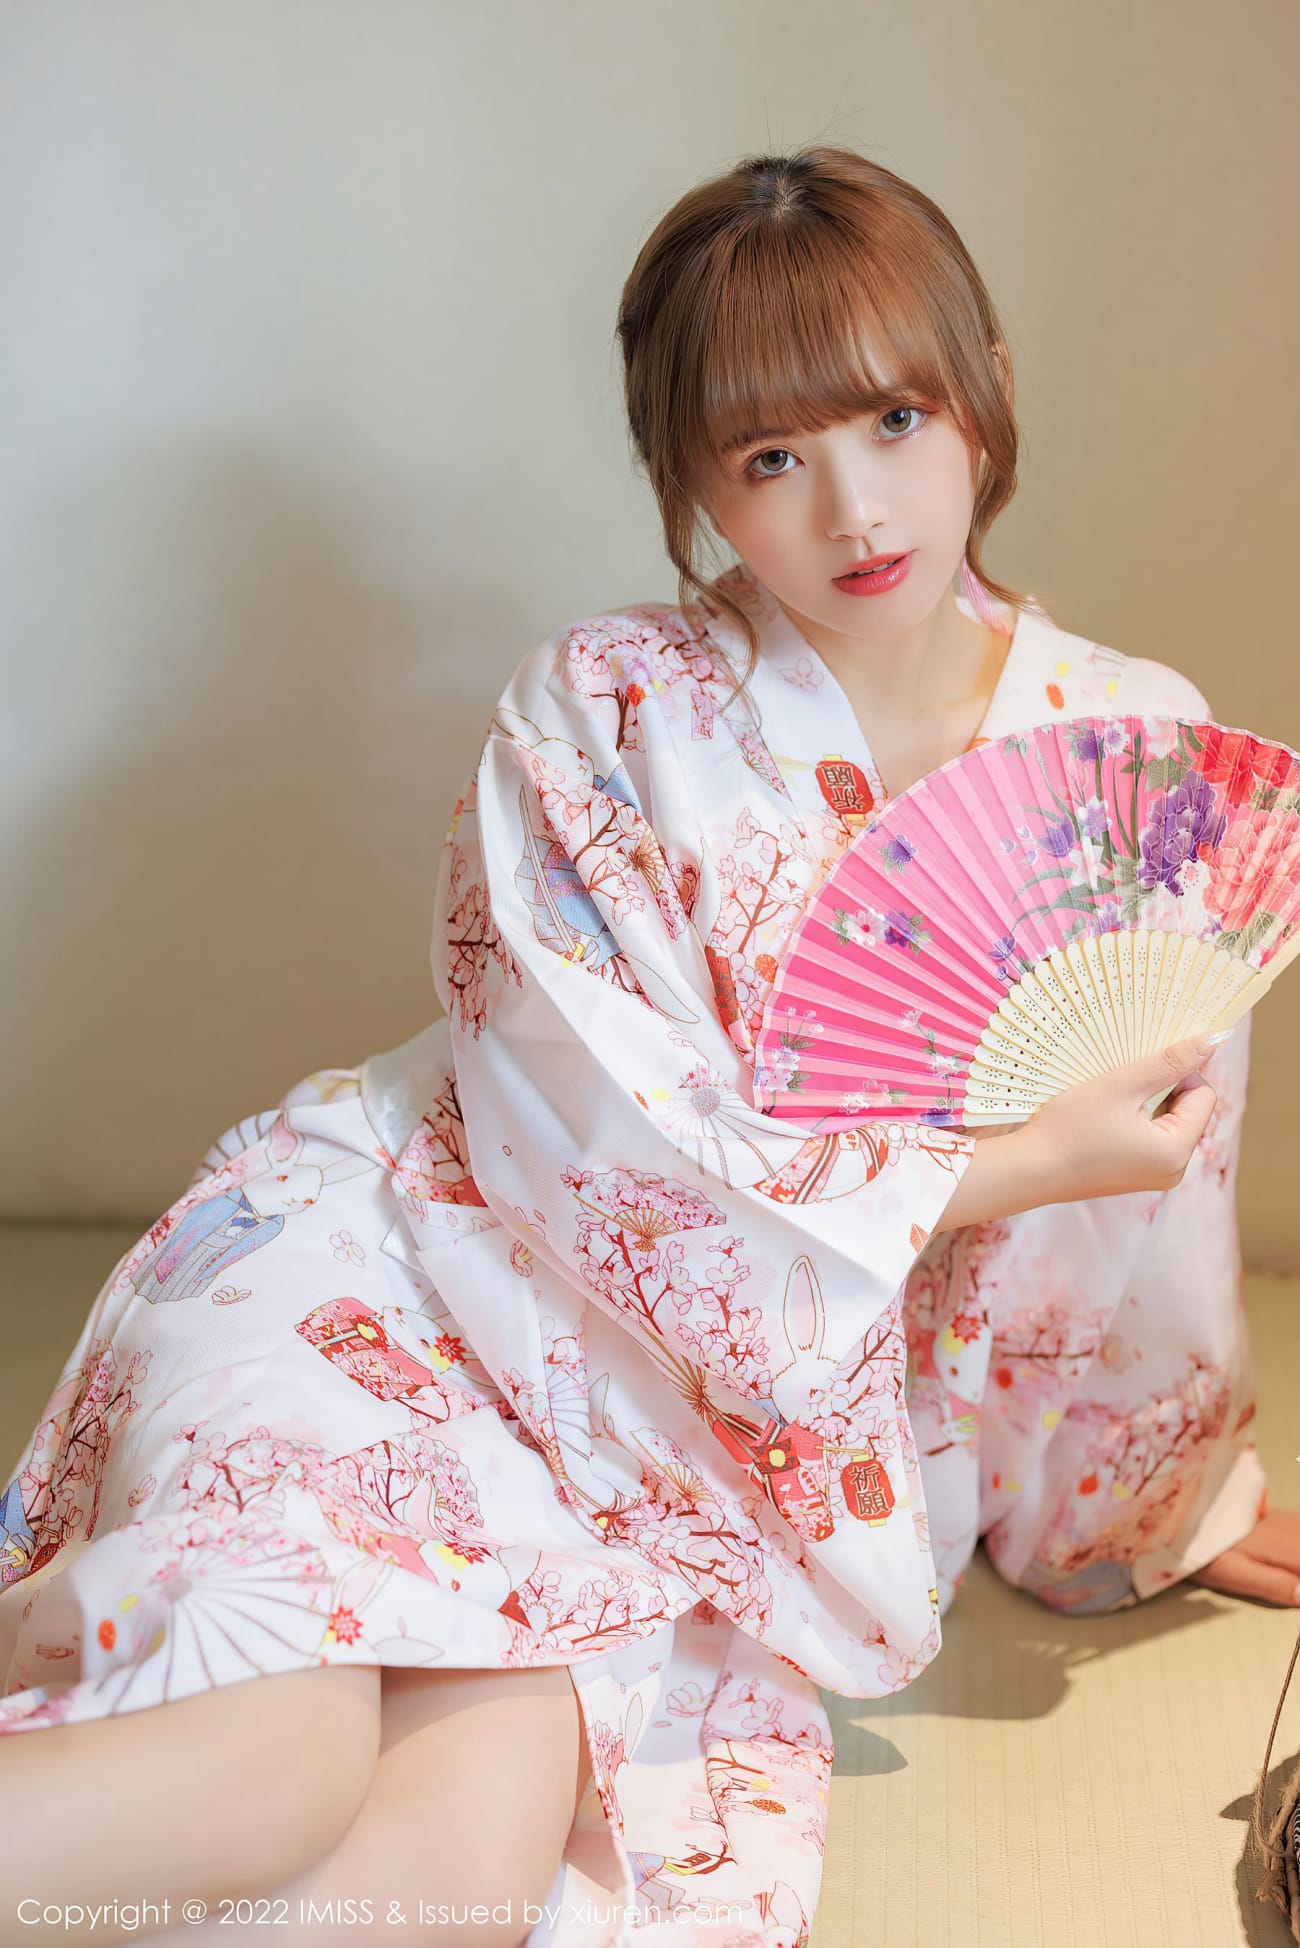 日本美少女贝贺琴莉写真自拍高清美照合集 | 吱托邦